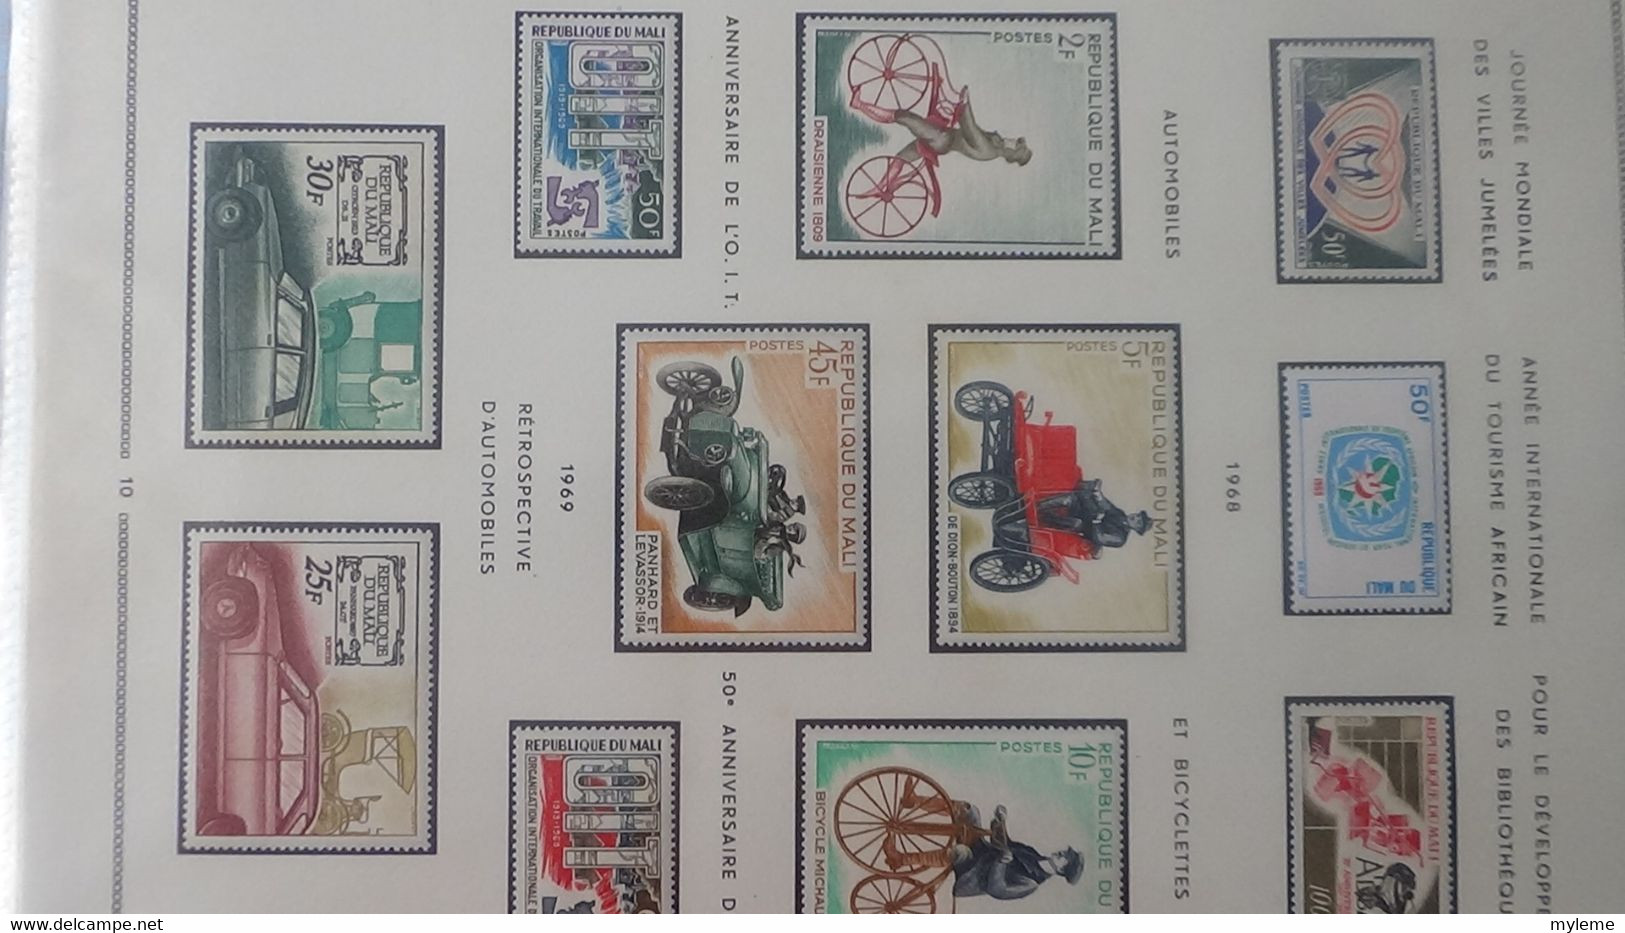 AD65 Collection en classeur de timbres et blocs ** et * de Haute Volta, Madagascar et Mali ...  A saisir !!!